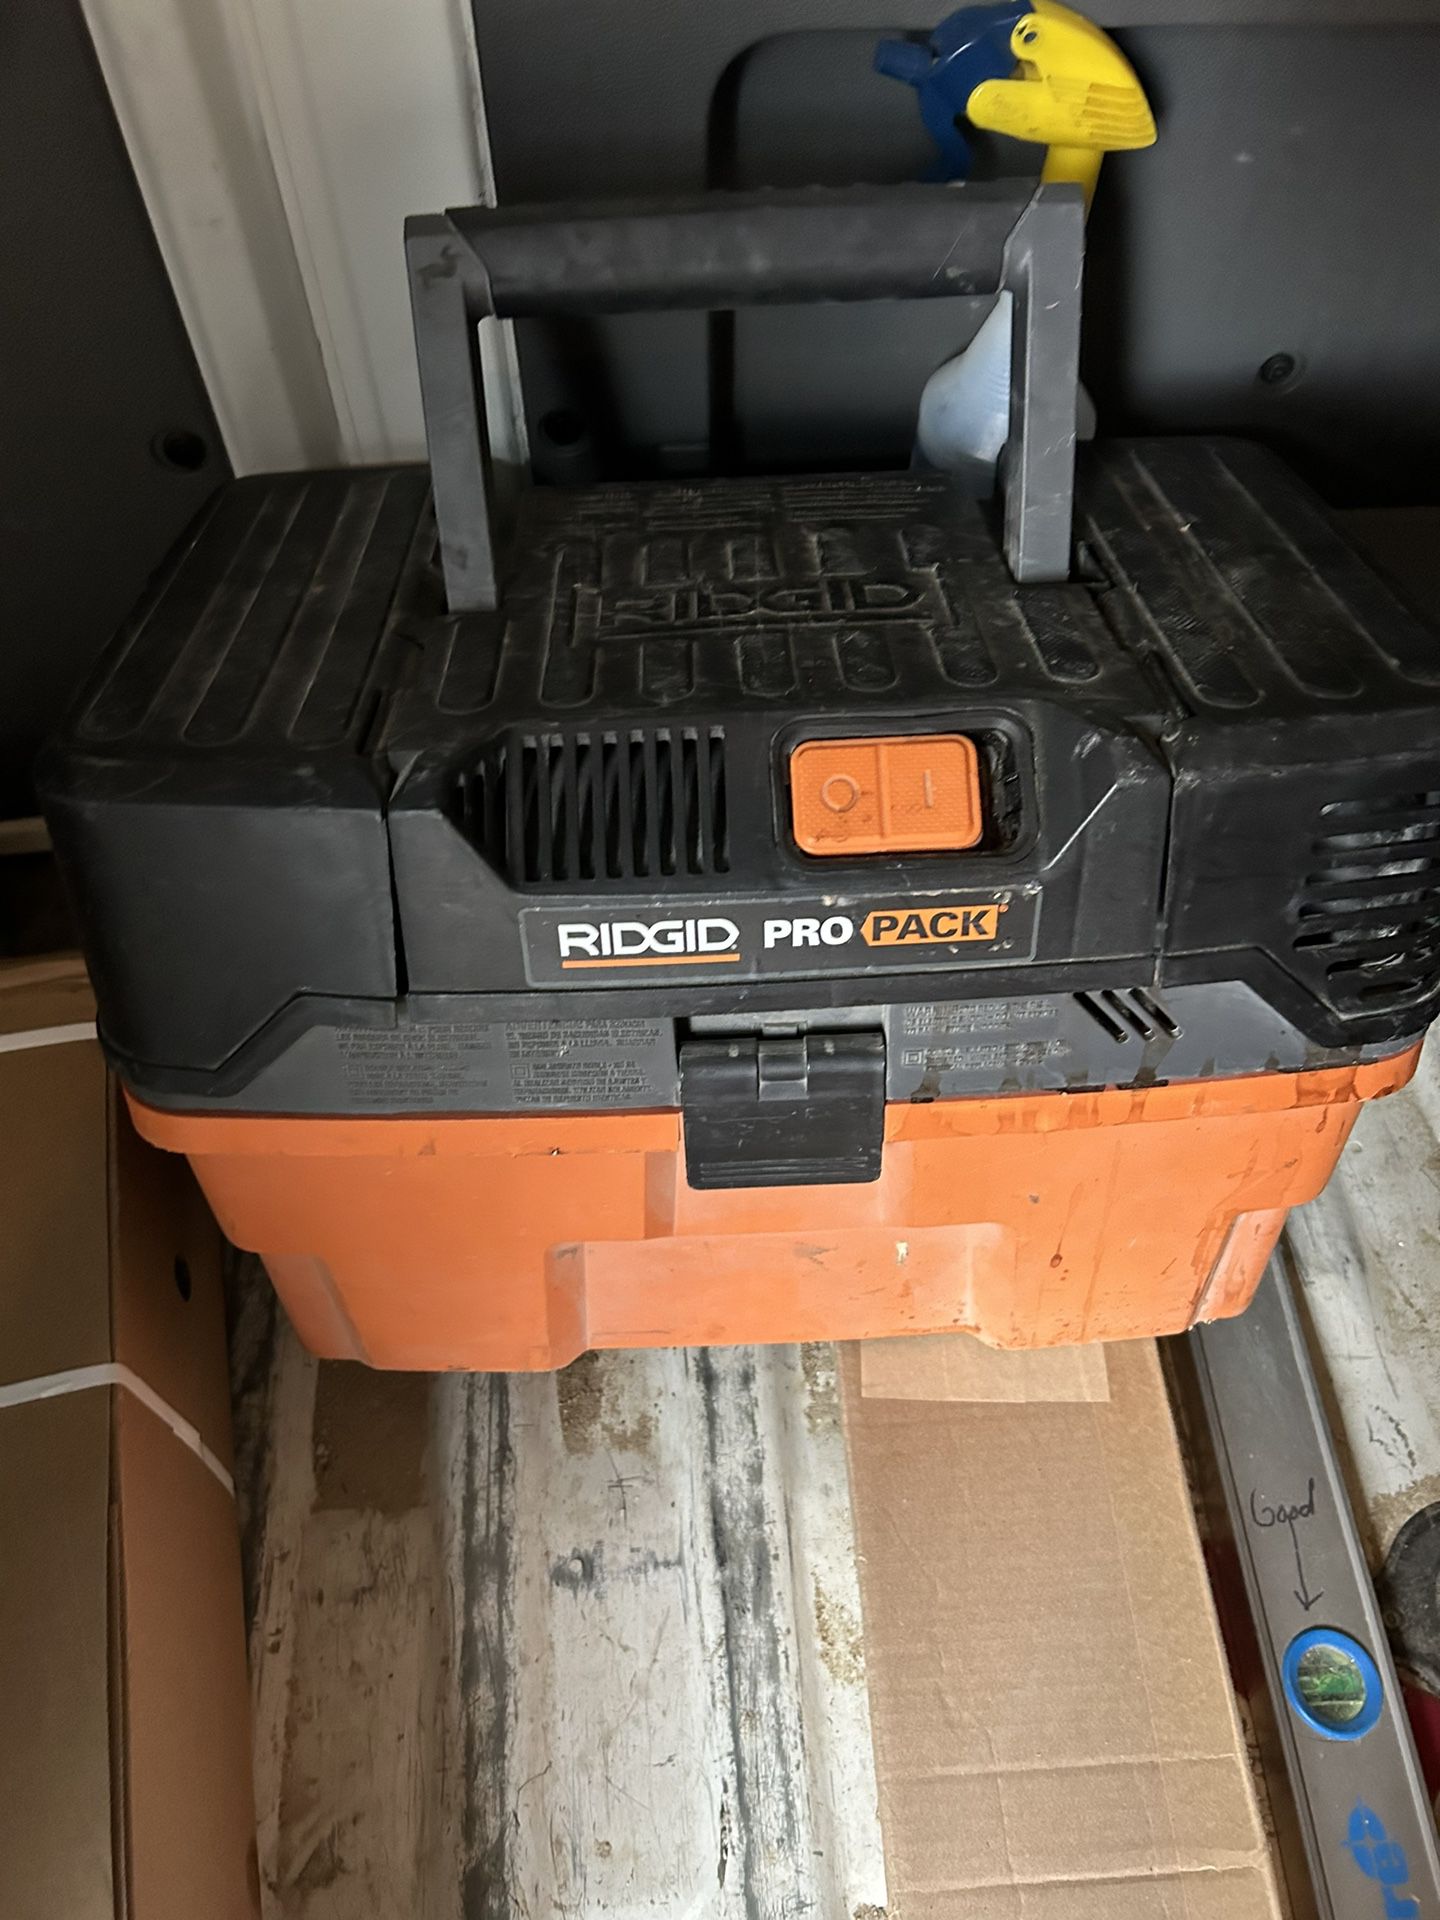 Rigid Pro Pack Vacuum 